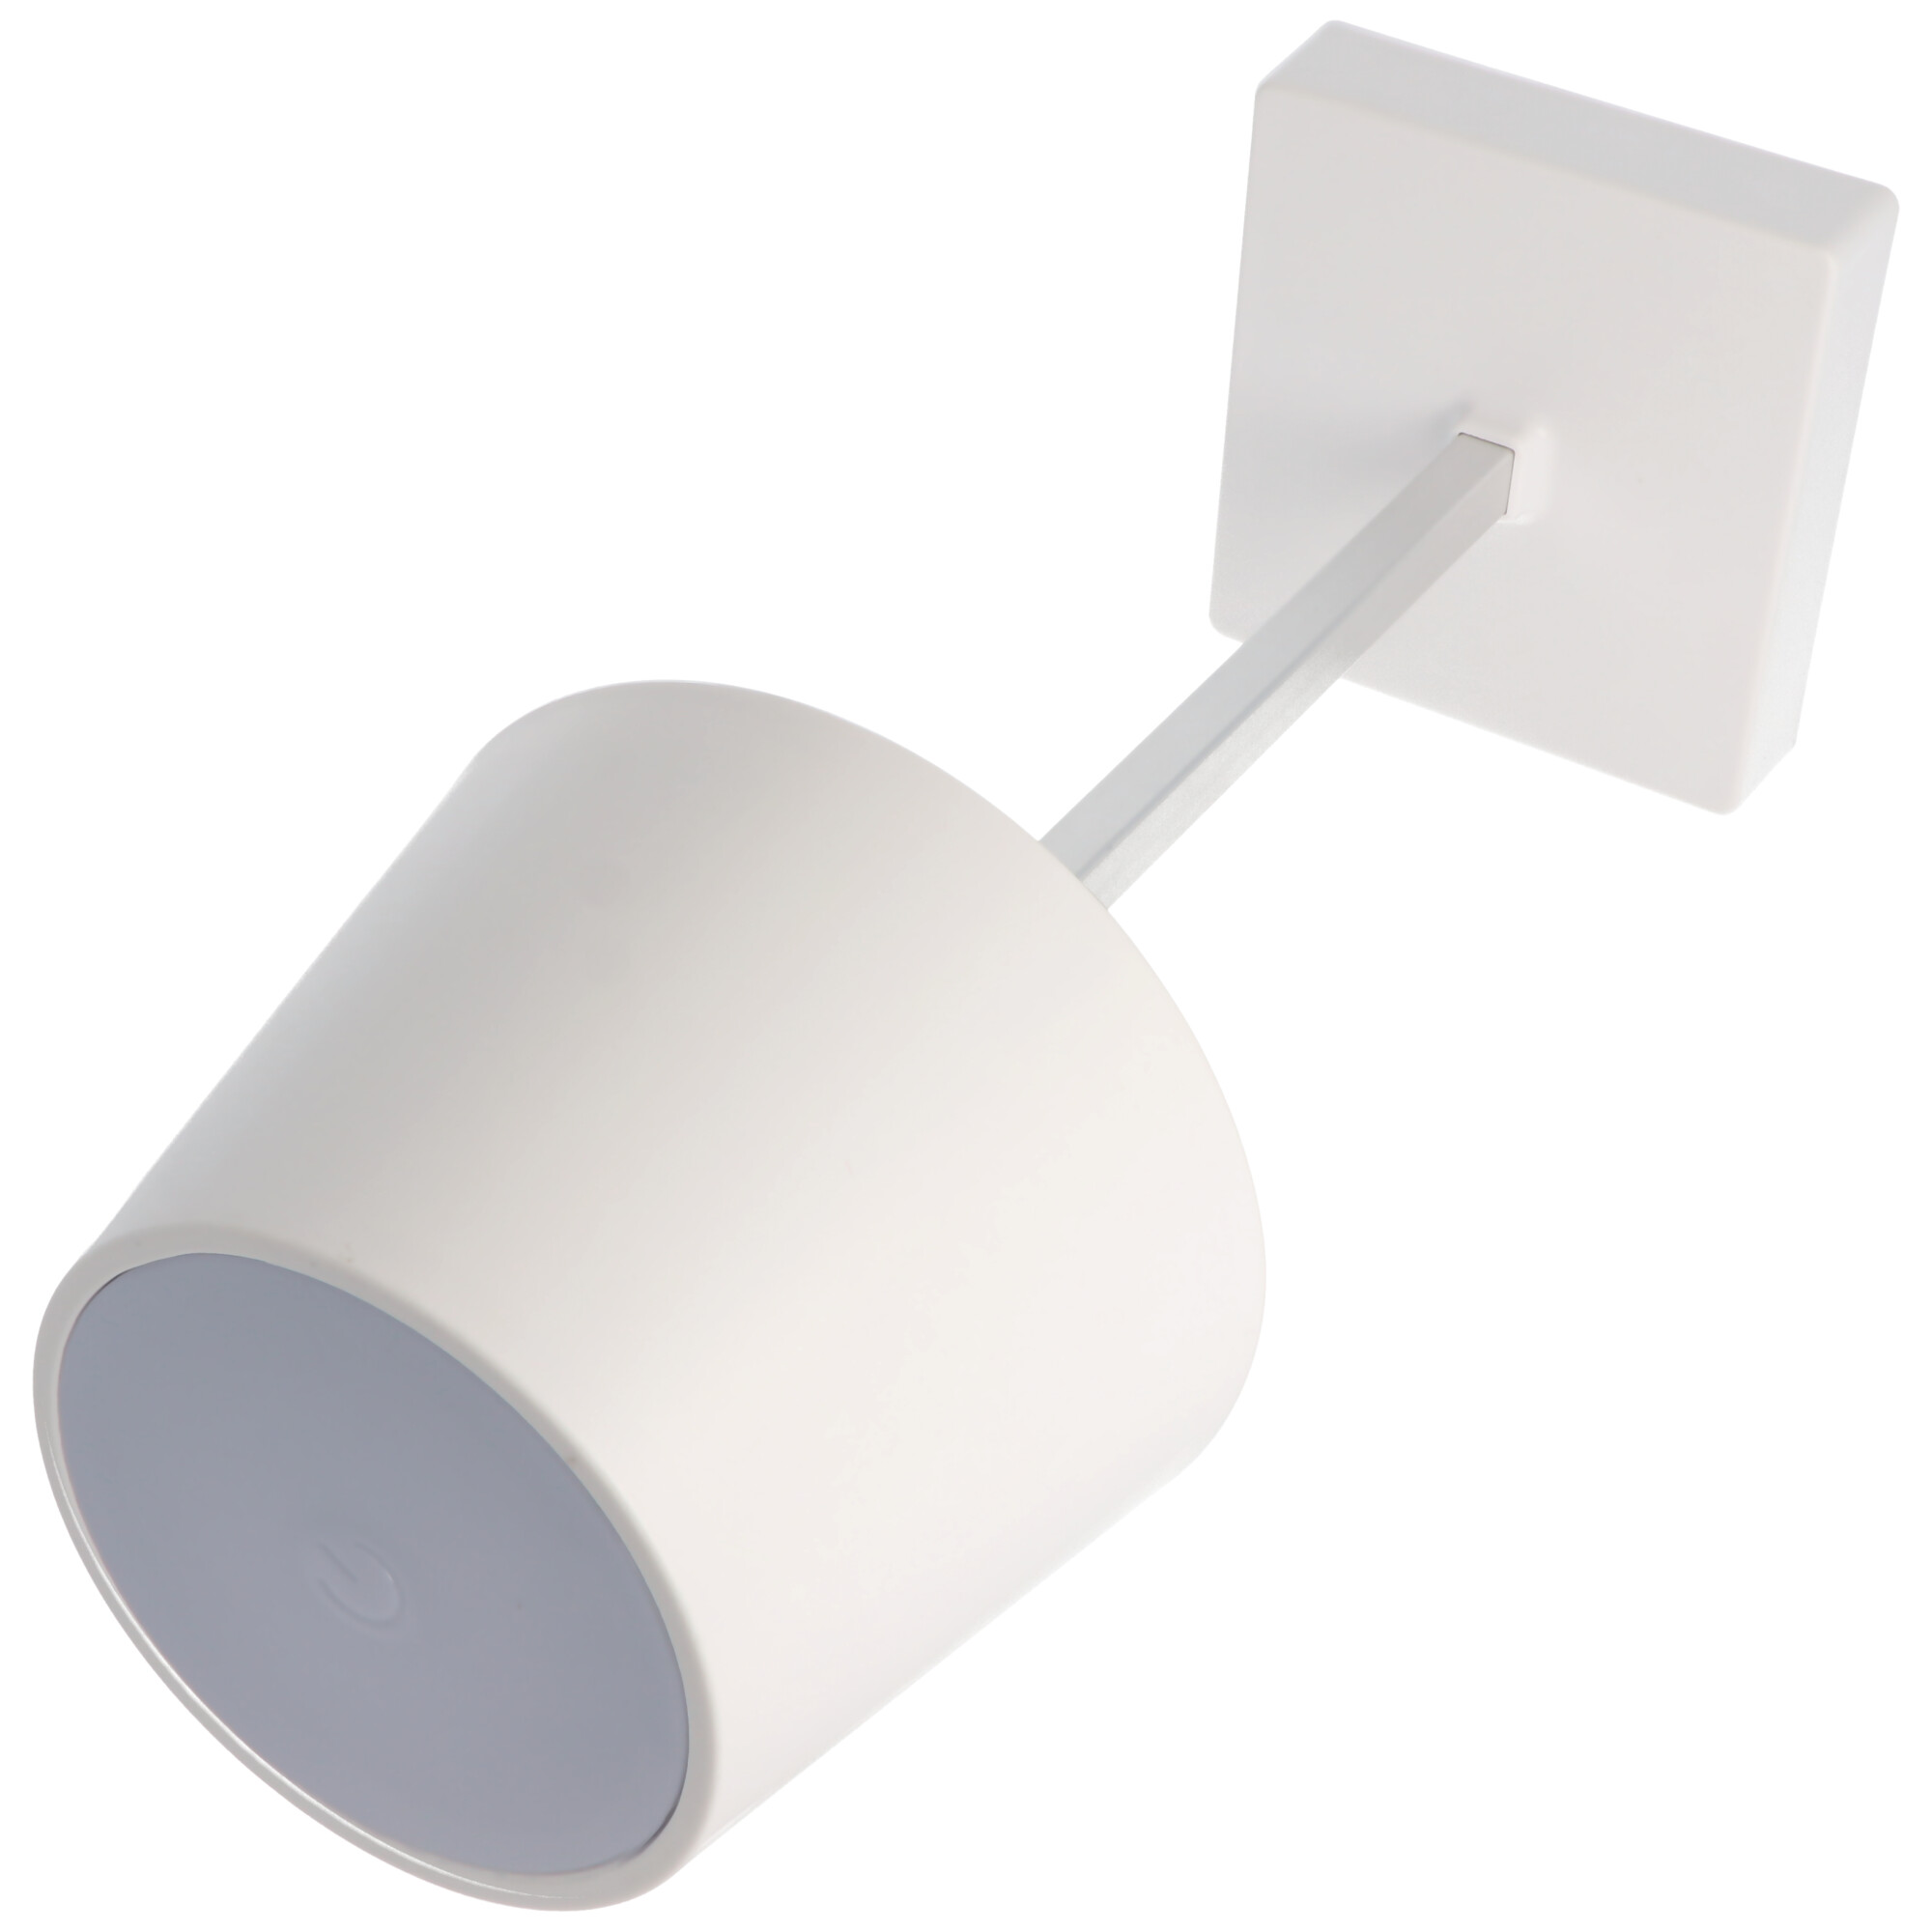 LED-Tischleuchte weiß mit Touchfunktion, warm weiß, mit 3x AAA Micro LR03 Batterie